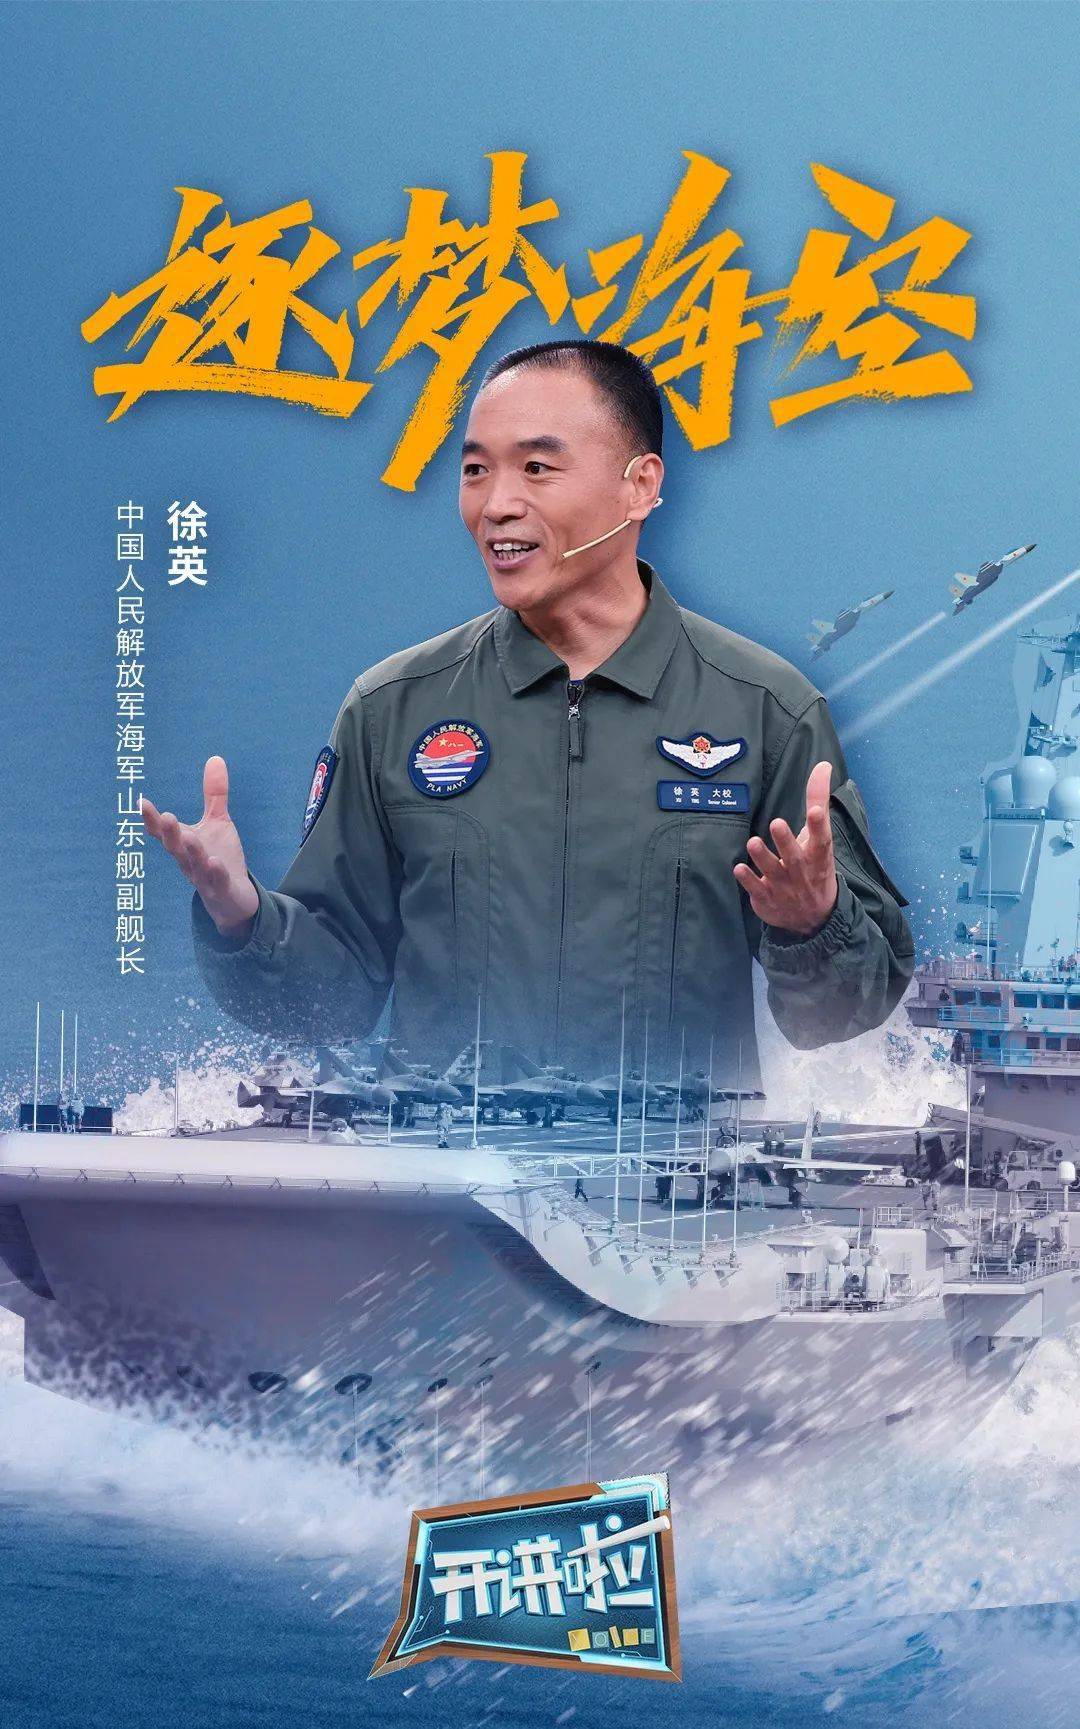 《开讲啦》邀请中国人民解放军海军山东舰副舰长徐英,分享了他从舰载